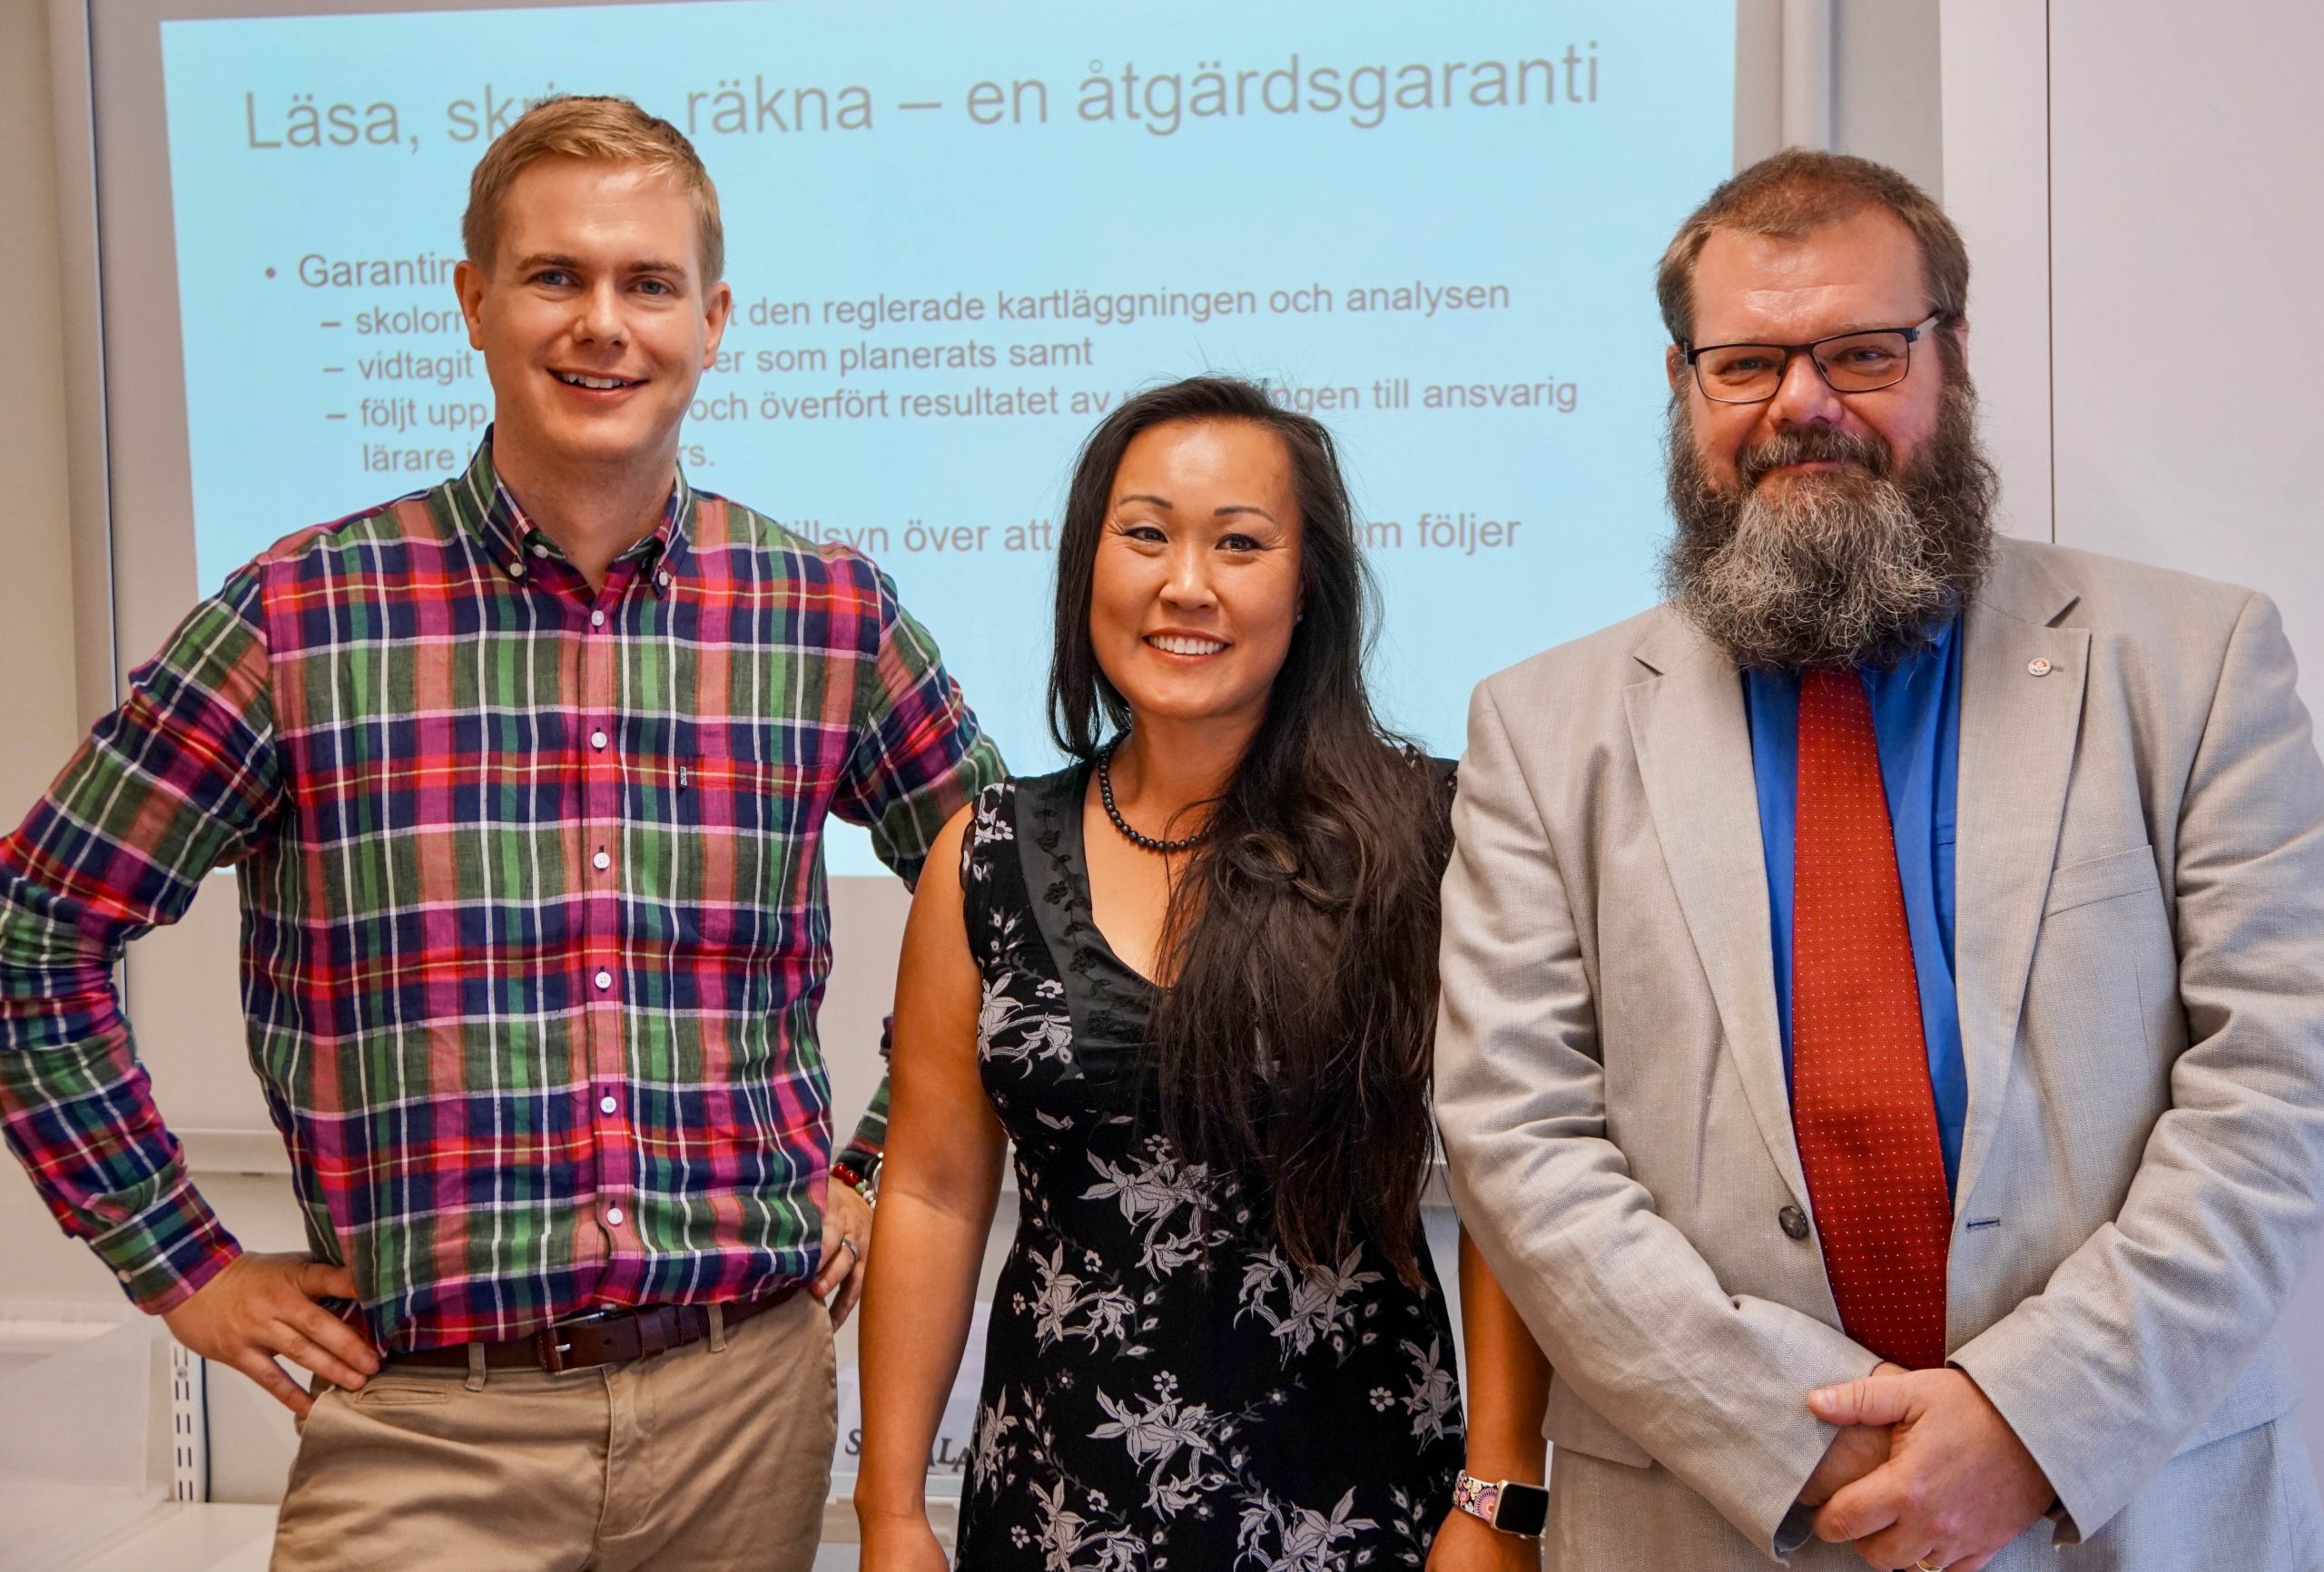 På bilden: Gustav Fridolin, Jiang Millington och Bengt-Erik Johansson stående bredvid varandra.